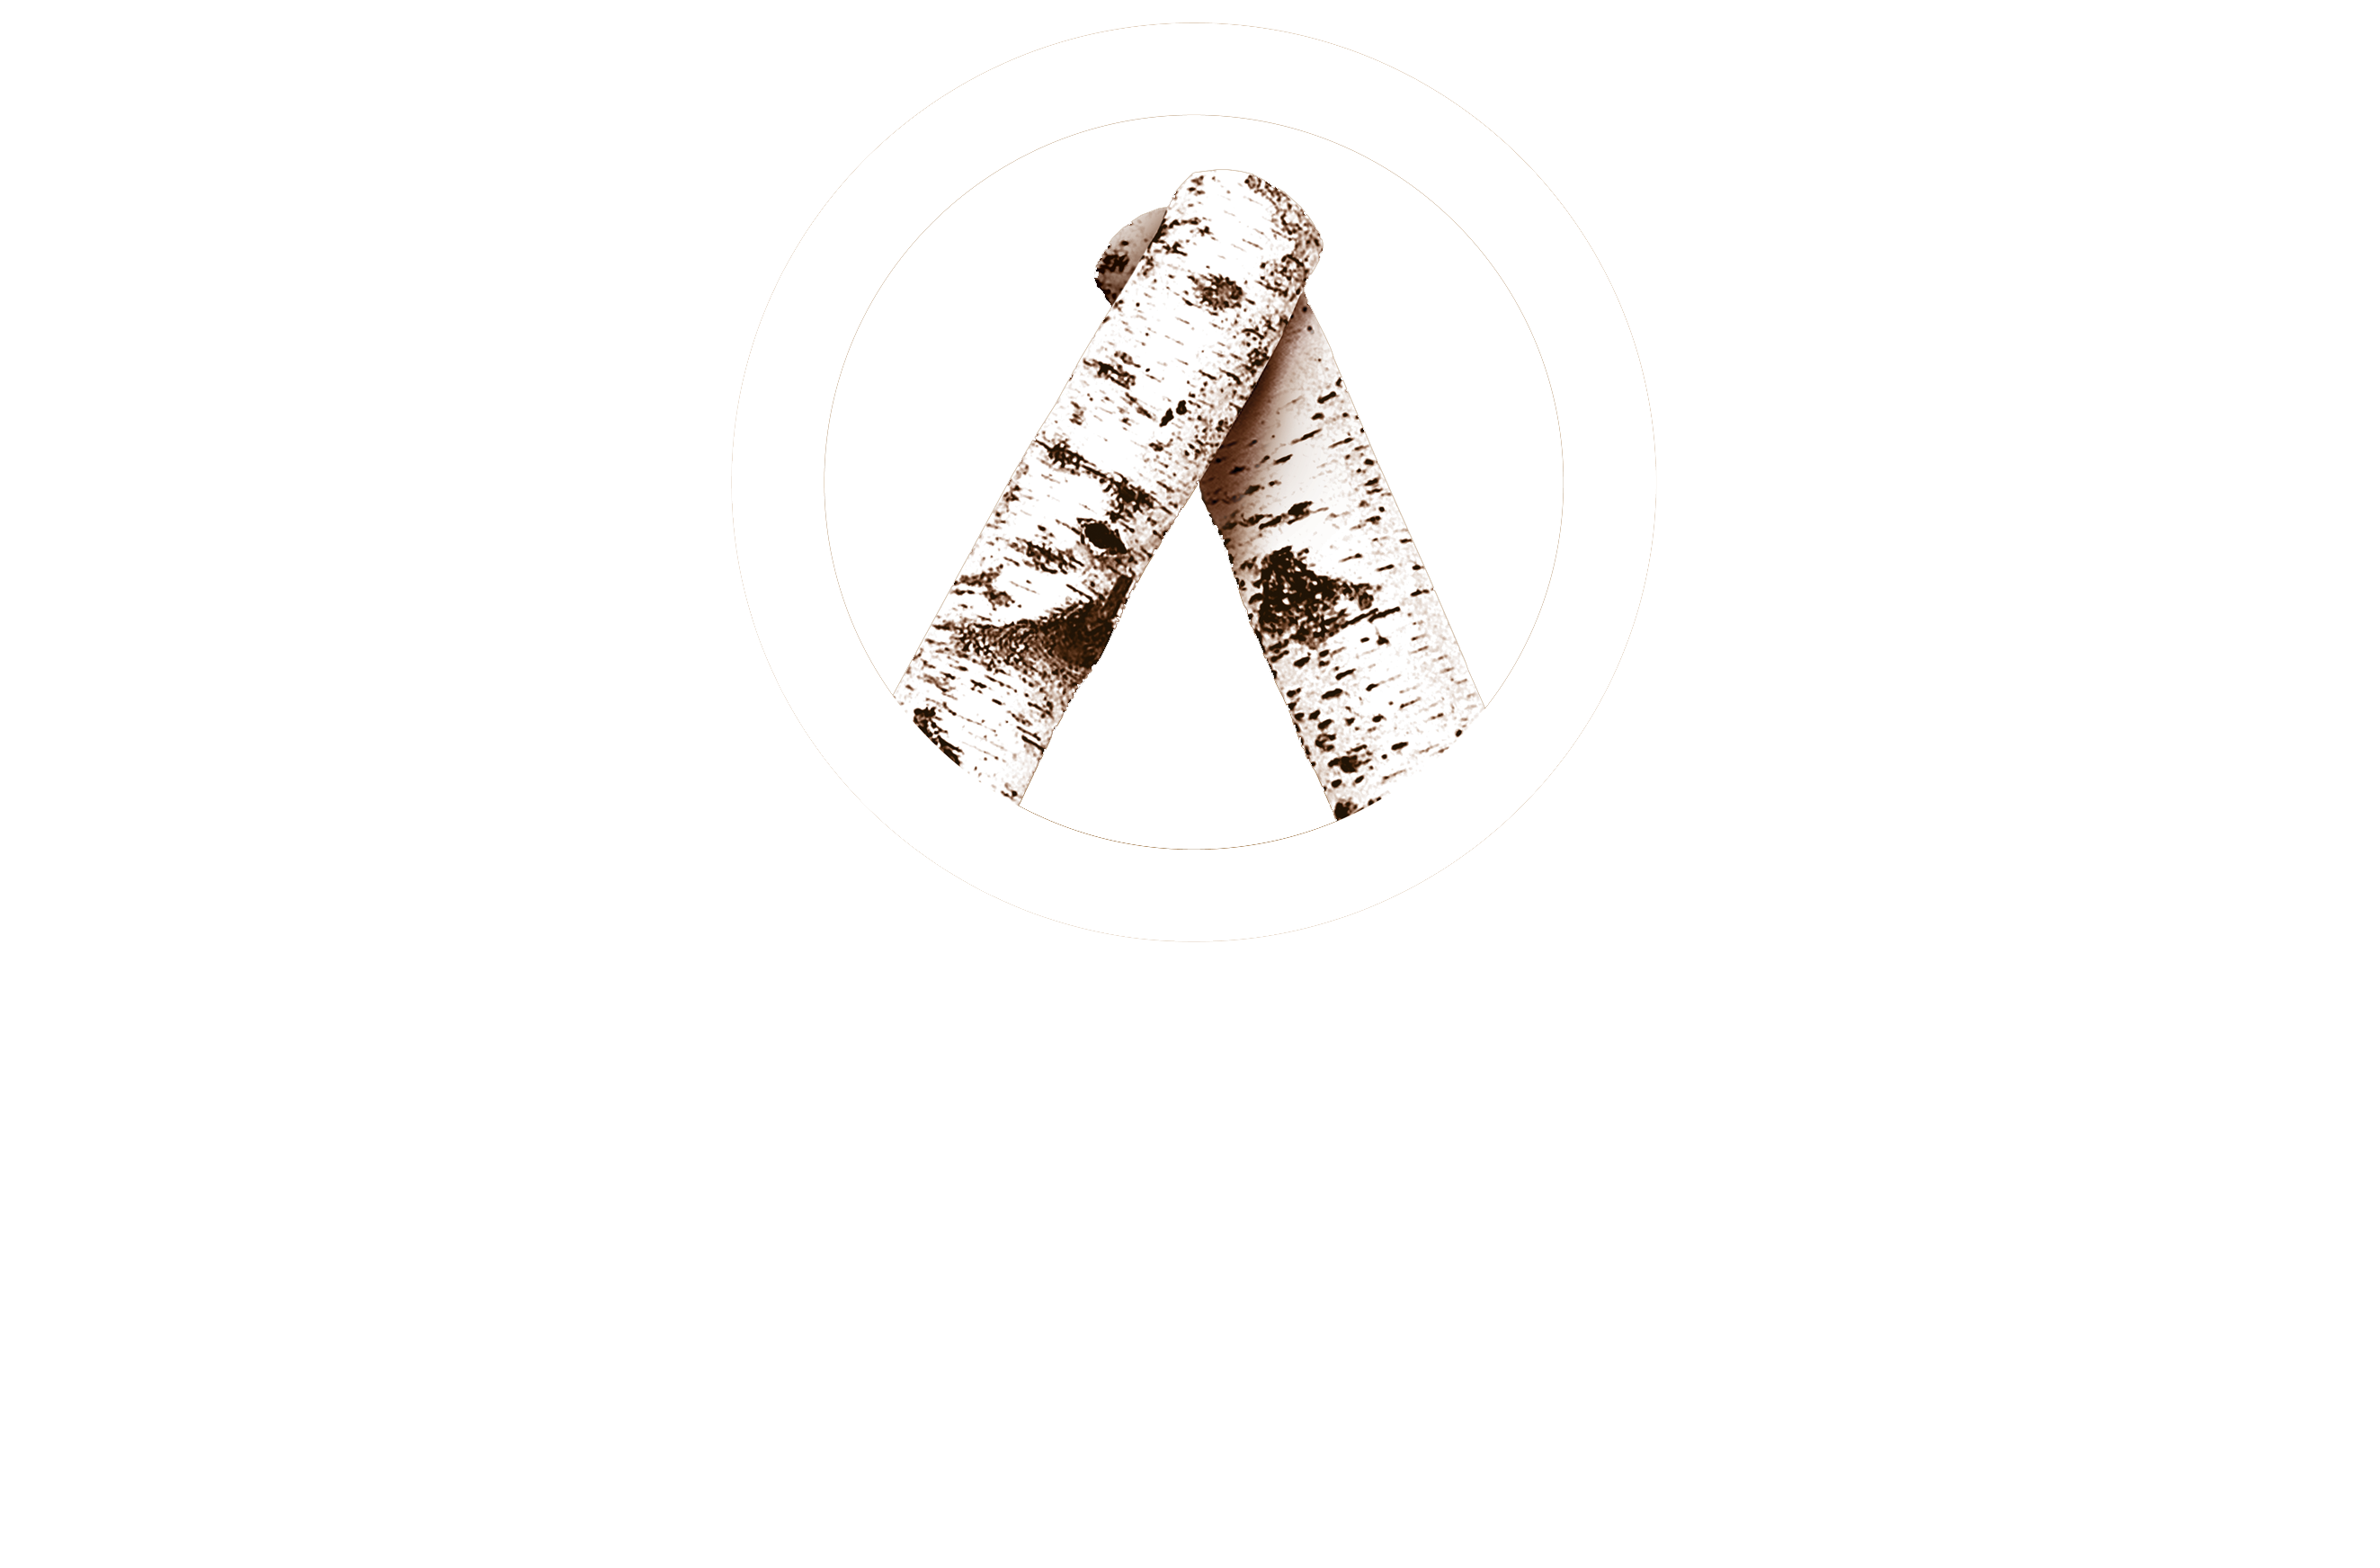 Archipelago Films